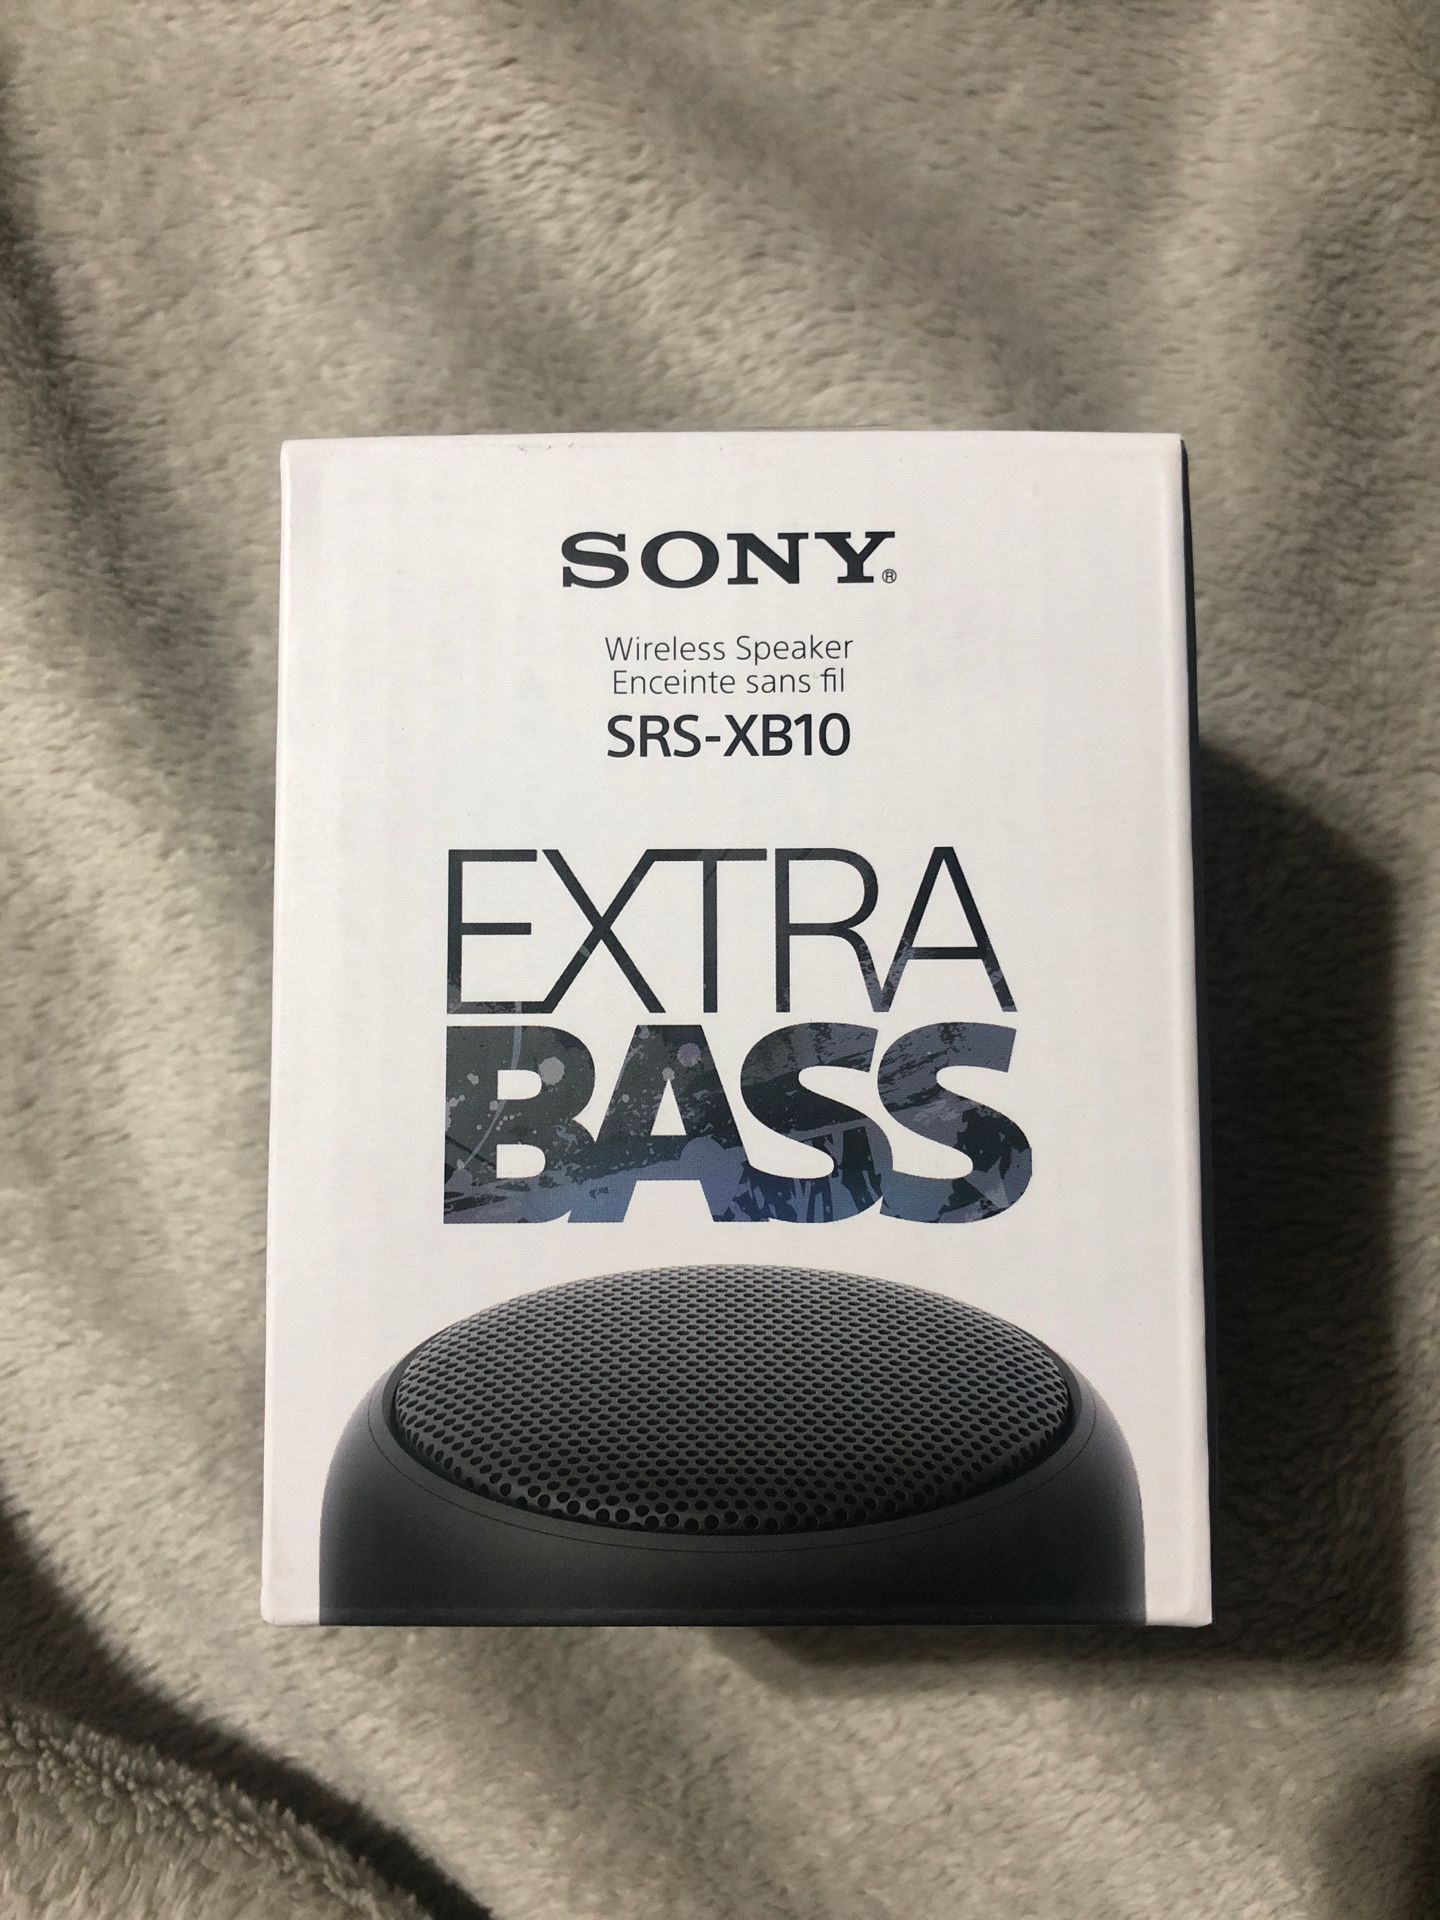 Wireless speaker Sony Extra Bass